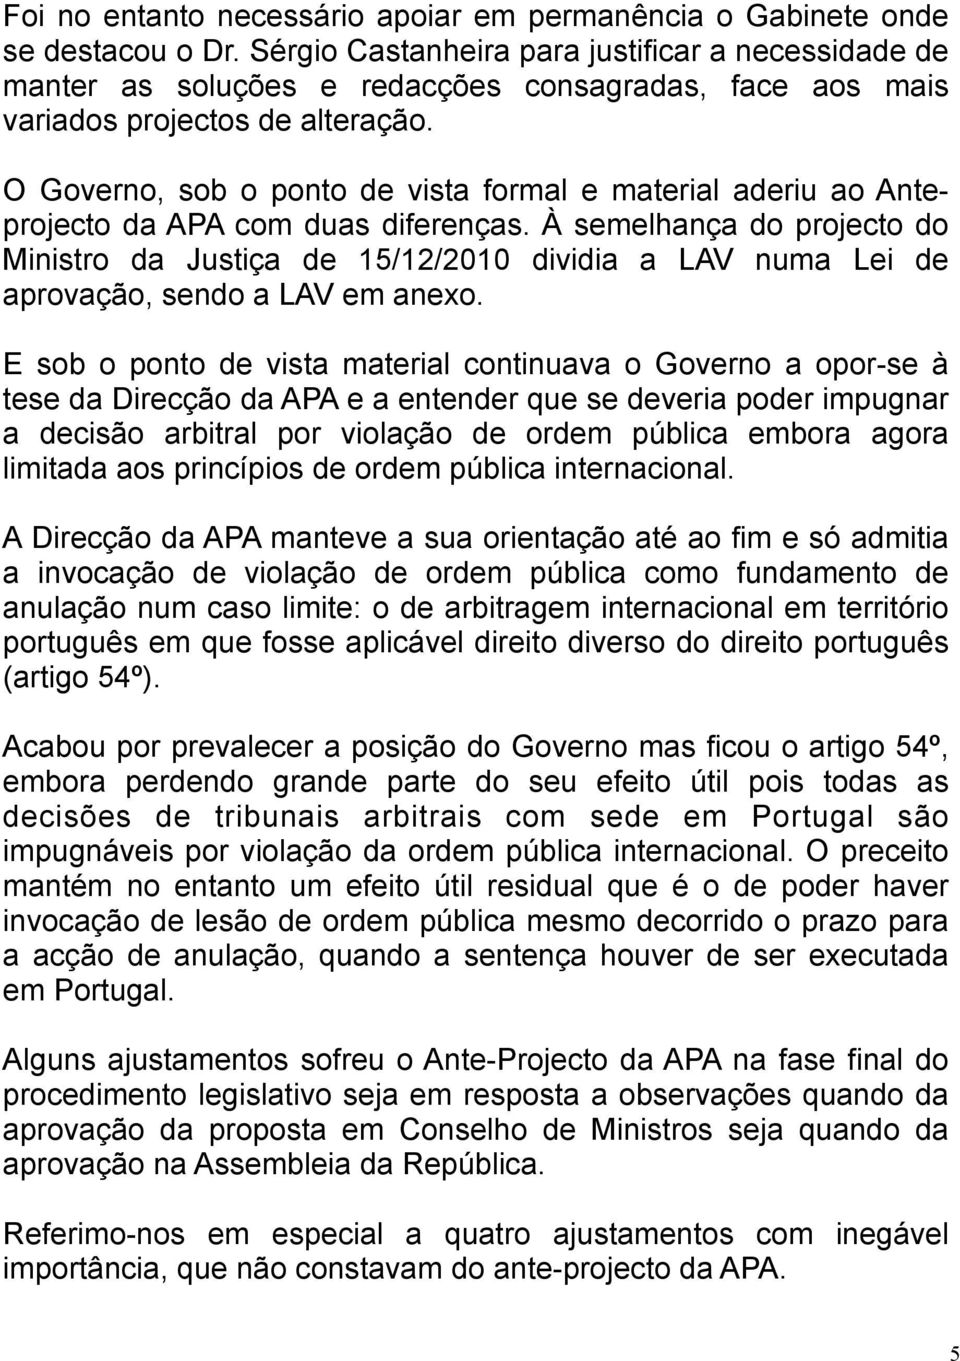 O Governo, sob o ponto de vista formal e material aderiu ao Anteprojecto da APA com duas diferenças.